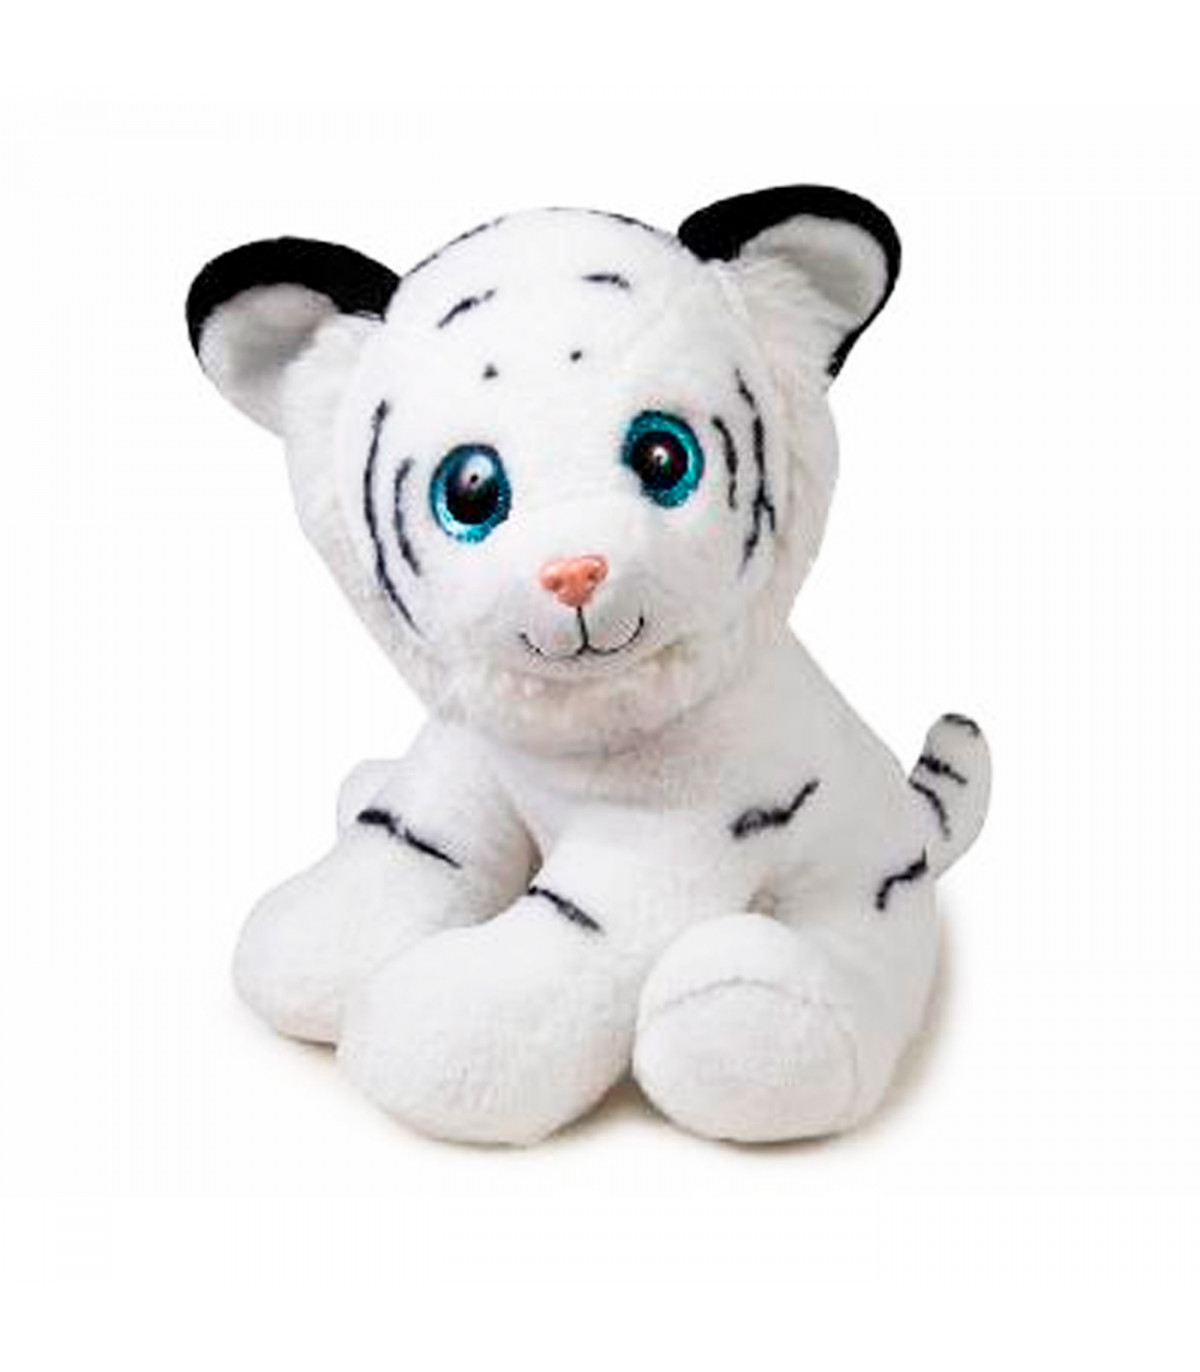 Toinsa - Tigre de peluche grande, regalo para niños o novia, navidad, san  valetín, colores aleatorios blanco o marrón, dimension